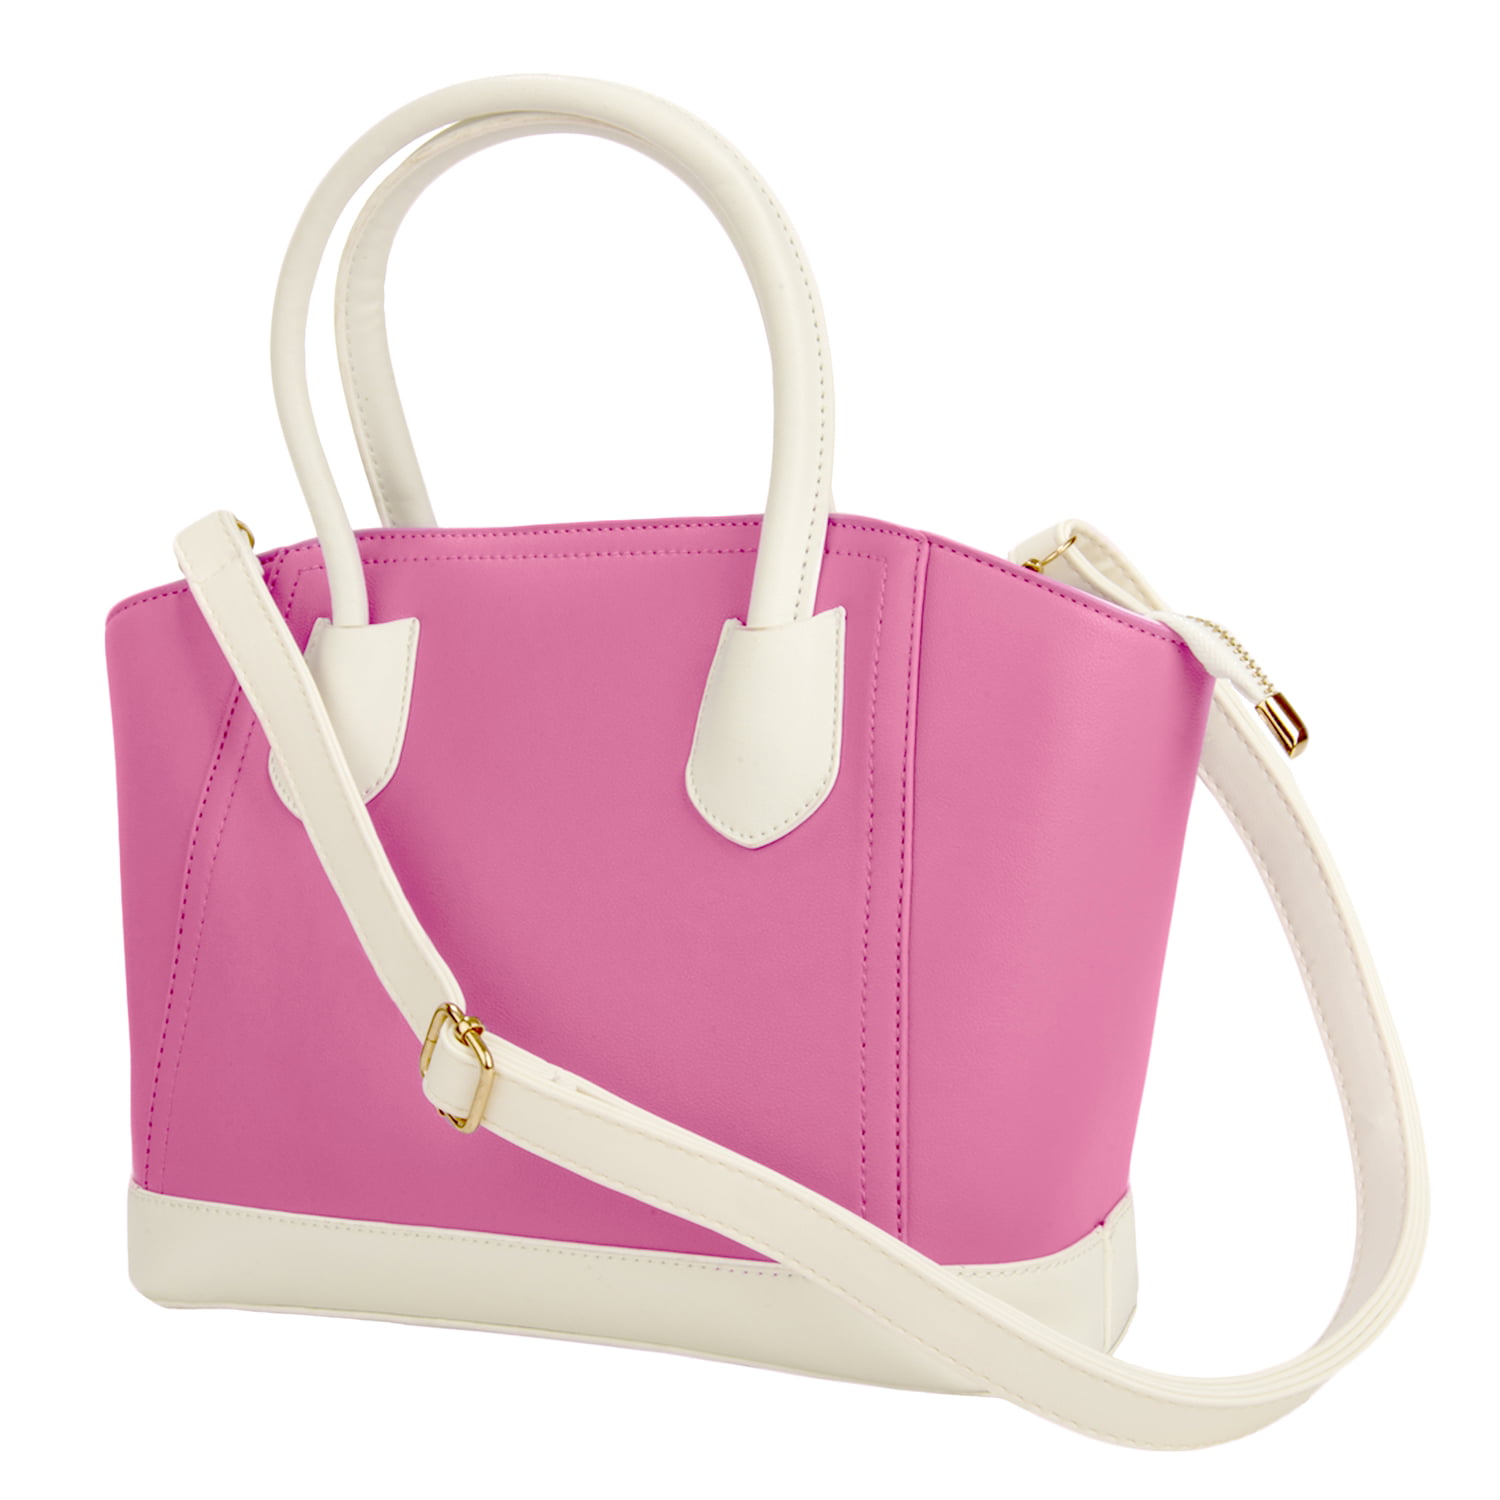 Buy MINISO Women Pink Shoulder Bag Pink Online @ Best Price in